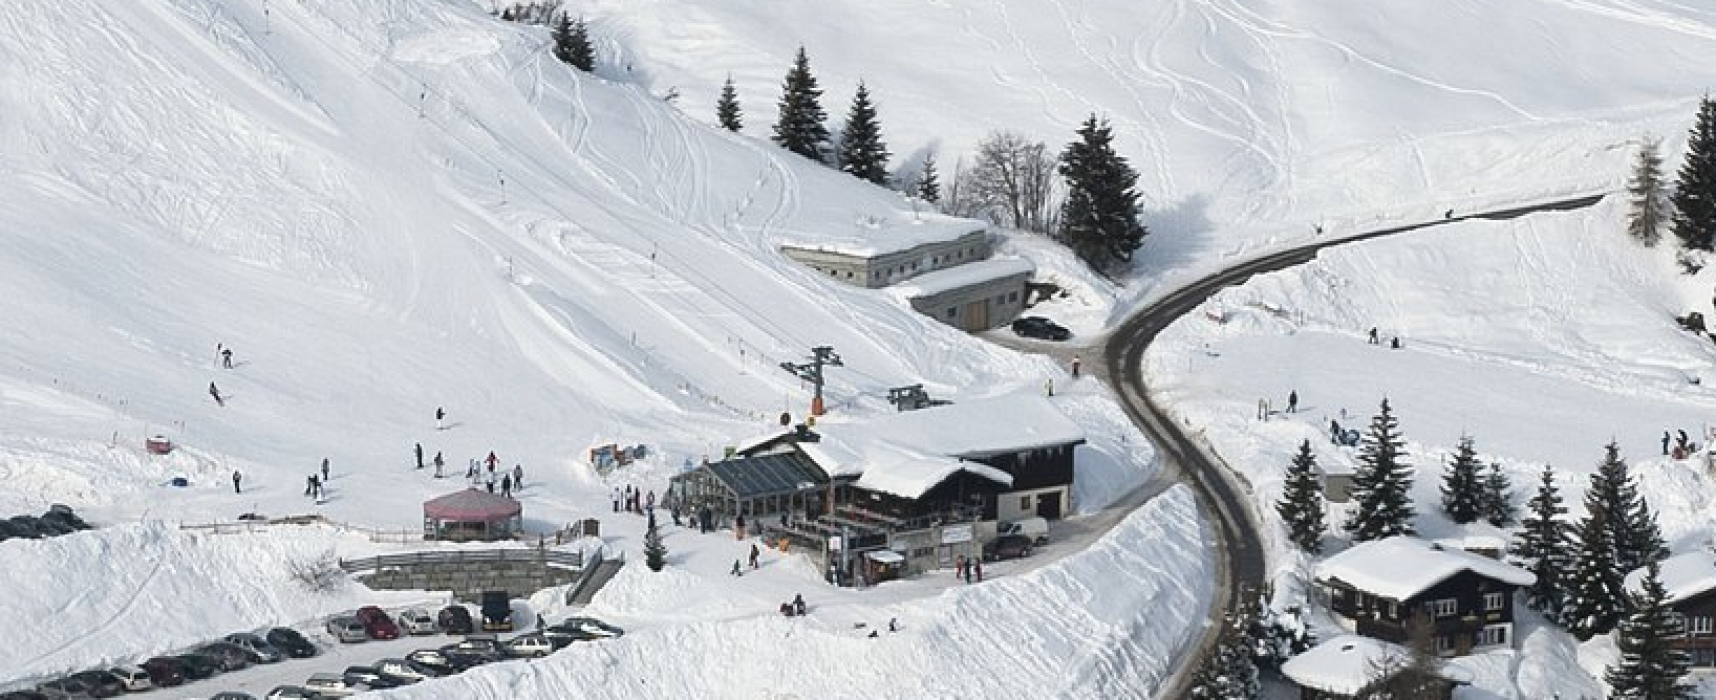 Bergrestaurant Skihütte bietet eine offene Stelle